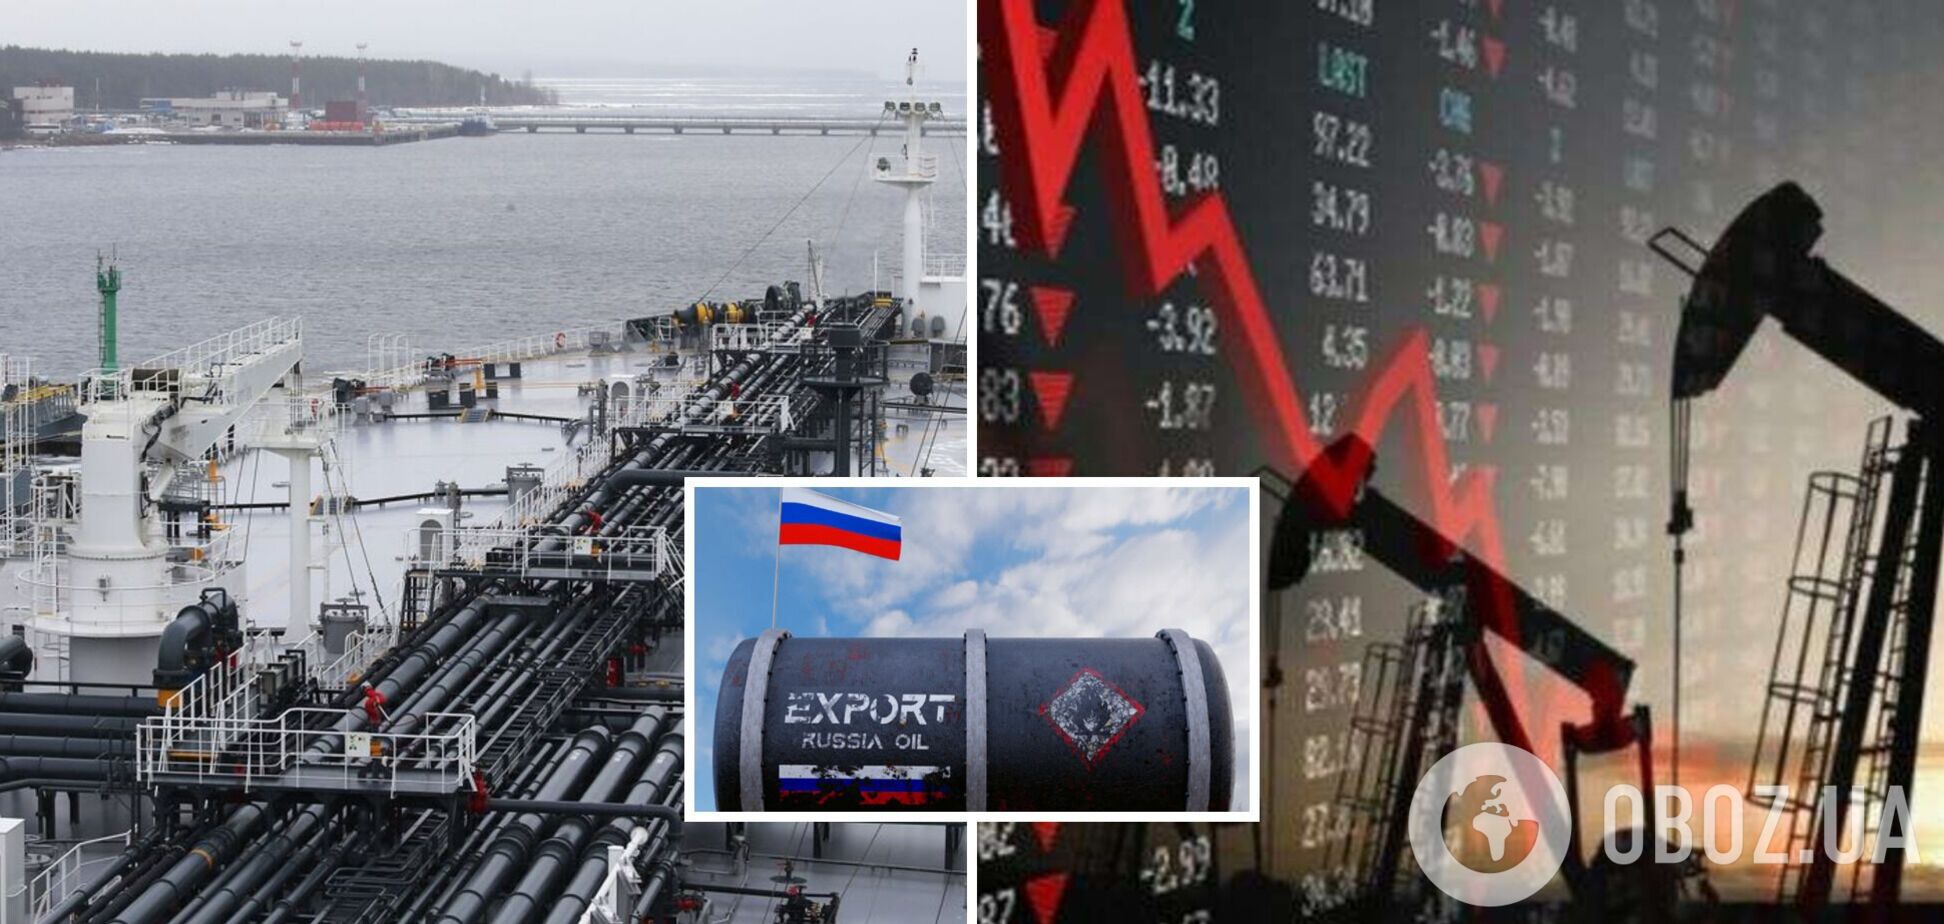 Российская нефть упала в цене ниже максимума, который планировали установить западные страны в новом пакете санкций – Bloomberg